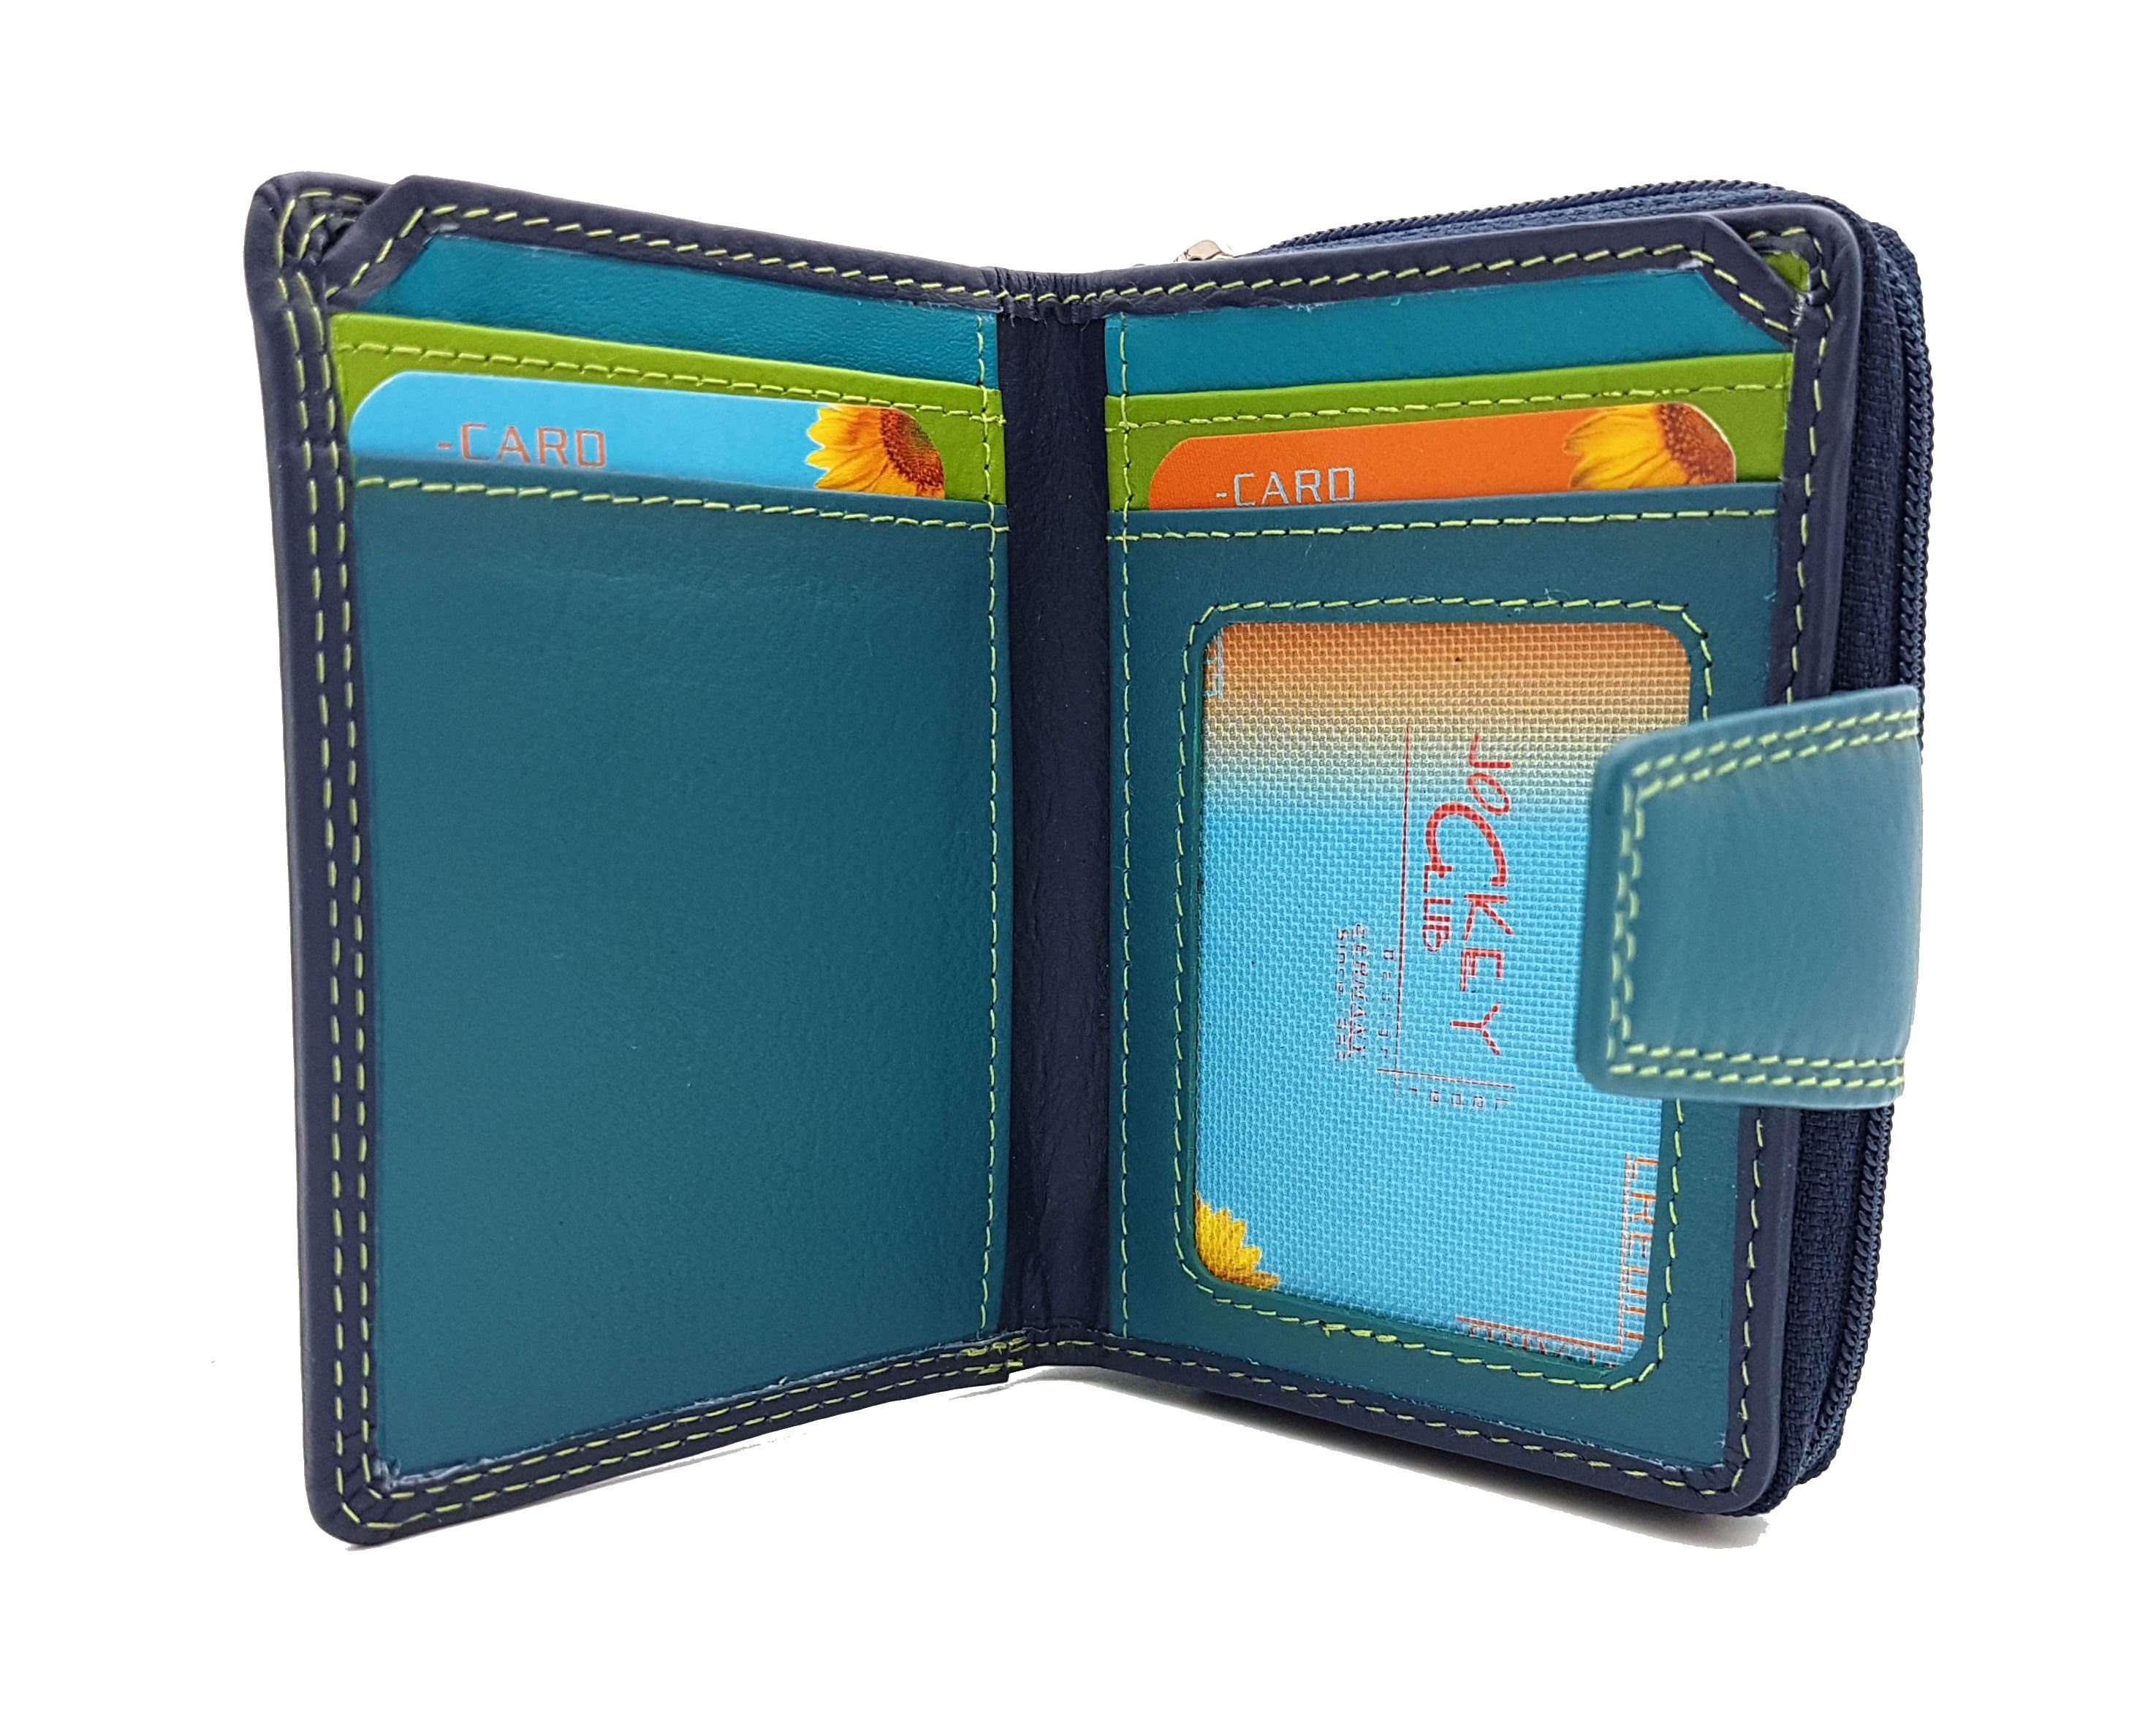 RFID Schutz, Reißverschlussmünzfach, Dunkelblau Farben, kleines echt tropische Leder mit Mini Geldbörse Portemonnaie CLUB JOCKEY Ausßenriegel Rio,